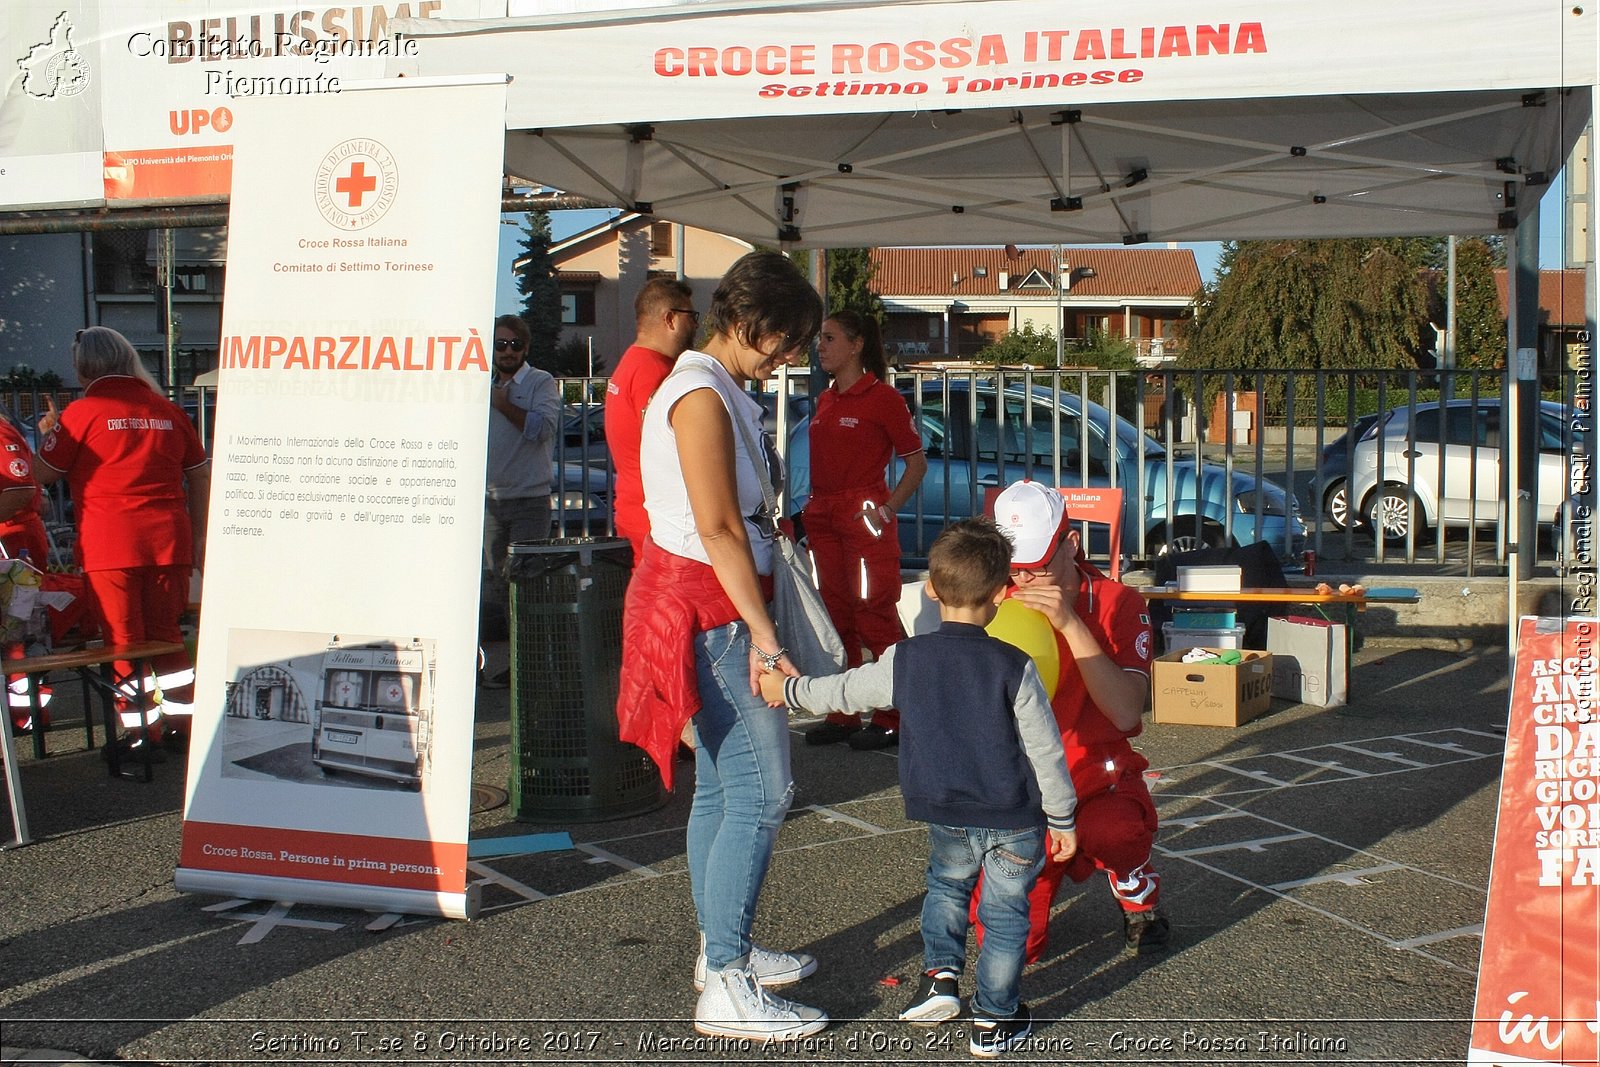 Settimo T.se 8 Ottobre 2017 - Mercatino Affari d'Oro 24 Edizione - Croce Rossa Italiana- Comitato Regionale del Piemonte